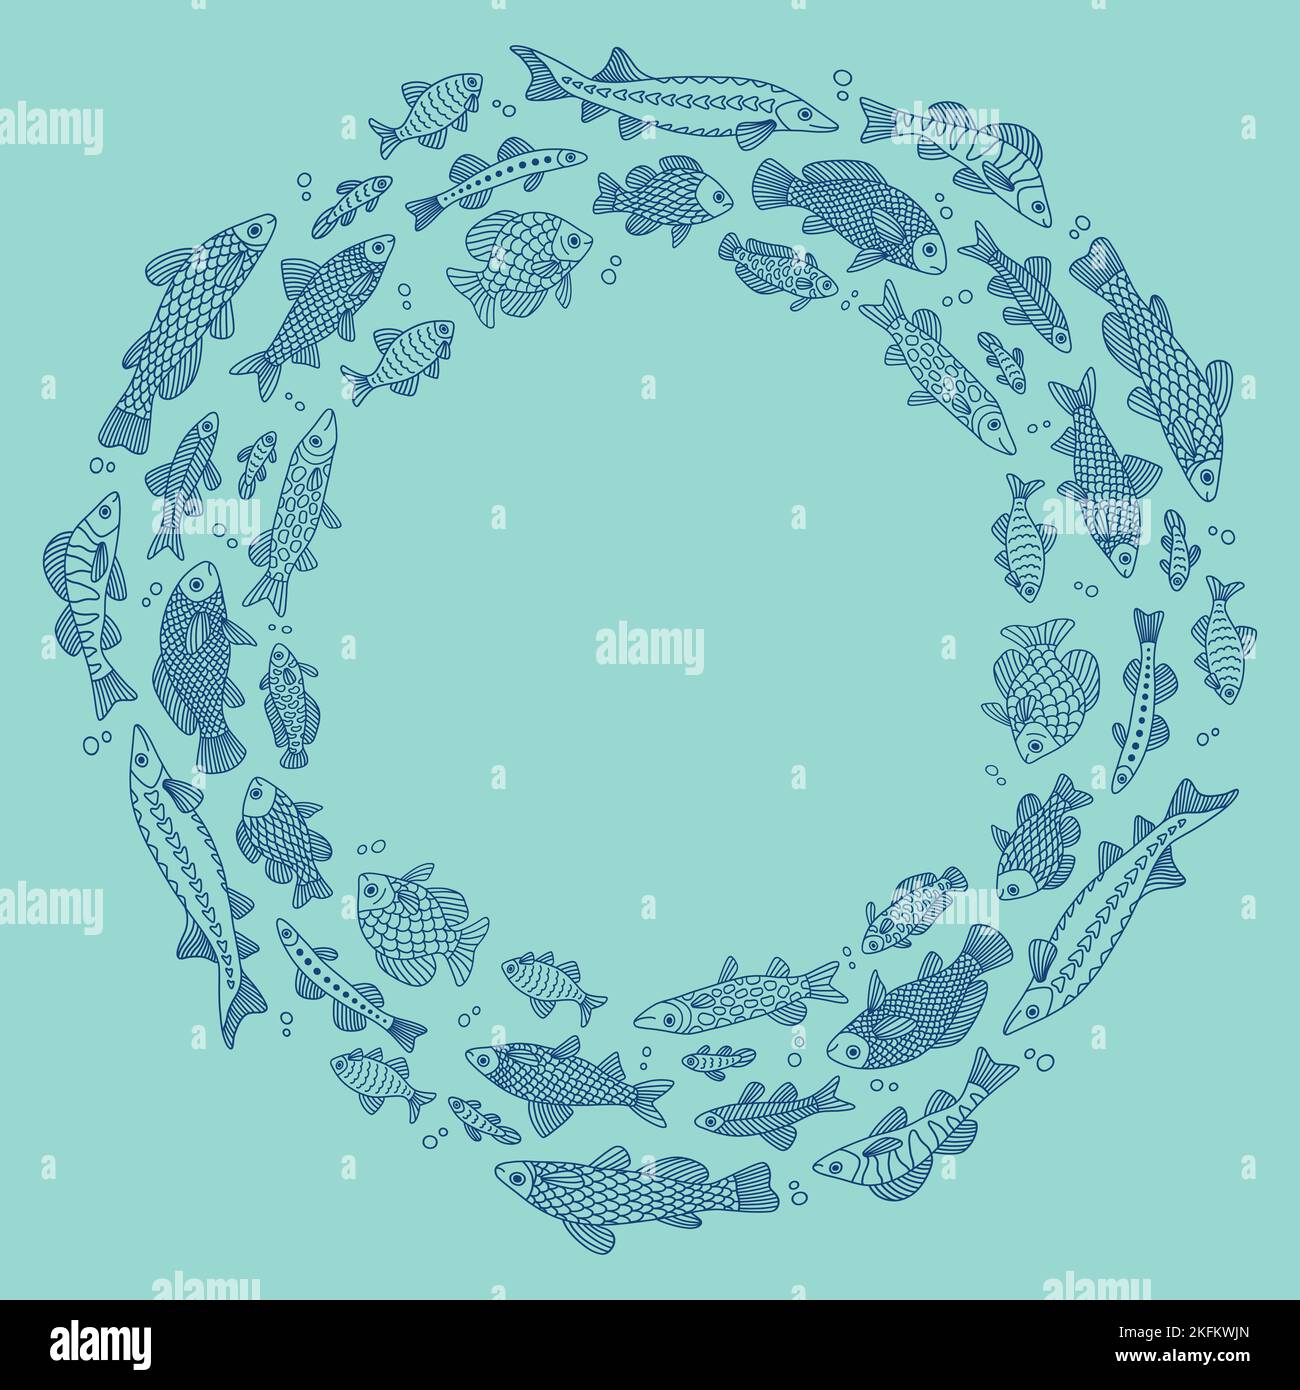 Vektor-Doodle Kreis Hintergrund mit Fischen in verschiedenen Formen mit verschiedenen handgezeichneten Mustern, isoliert Stock Vektor